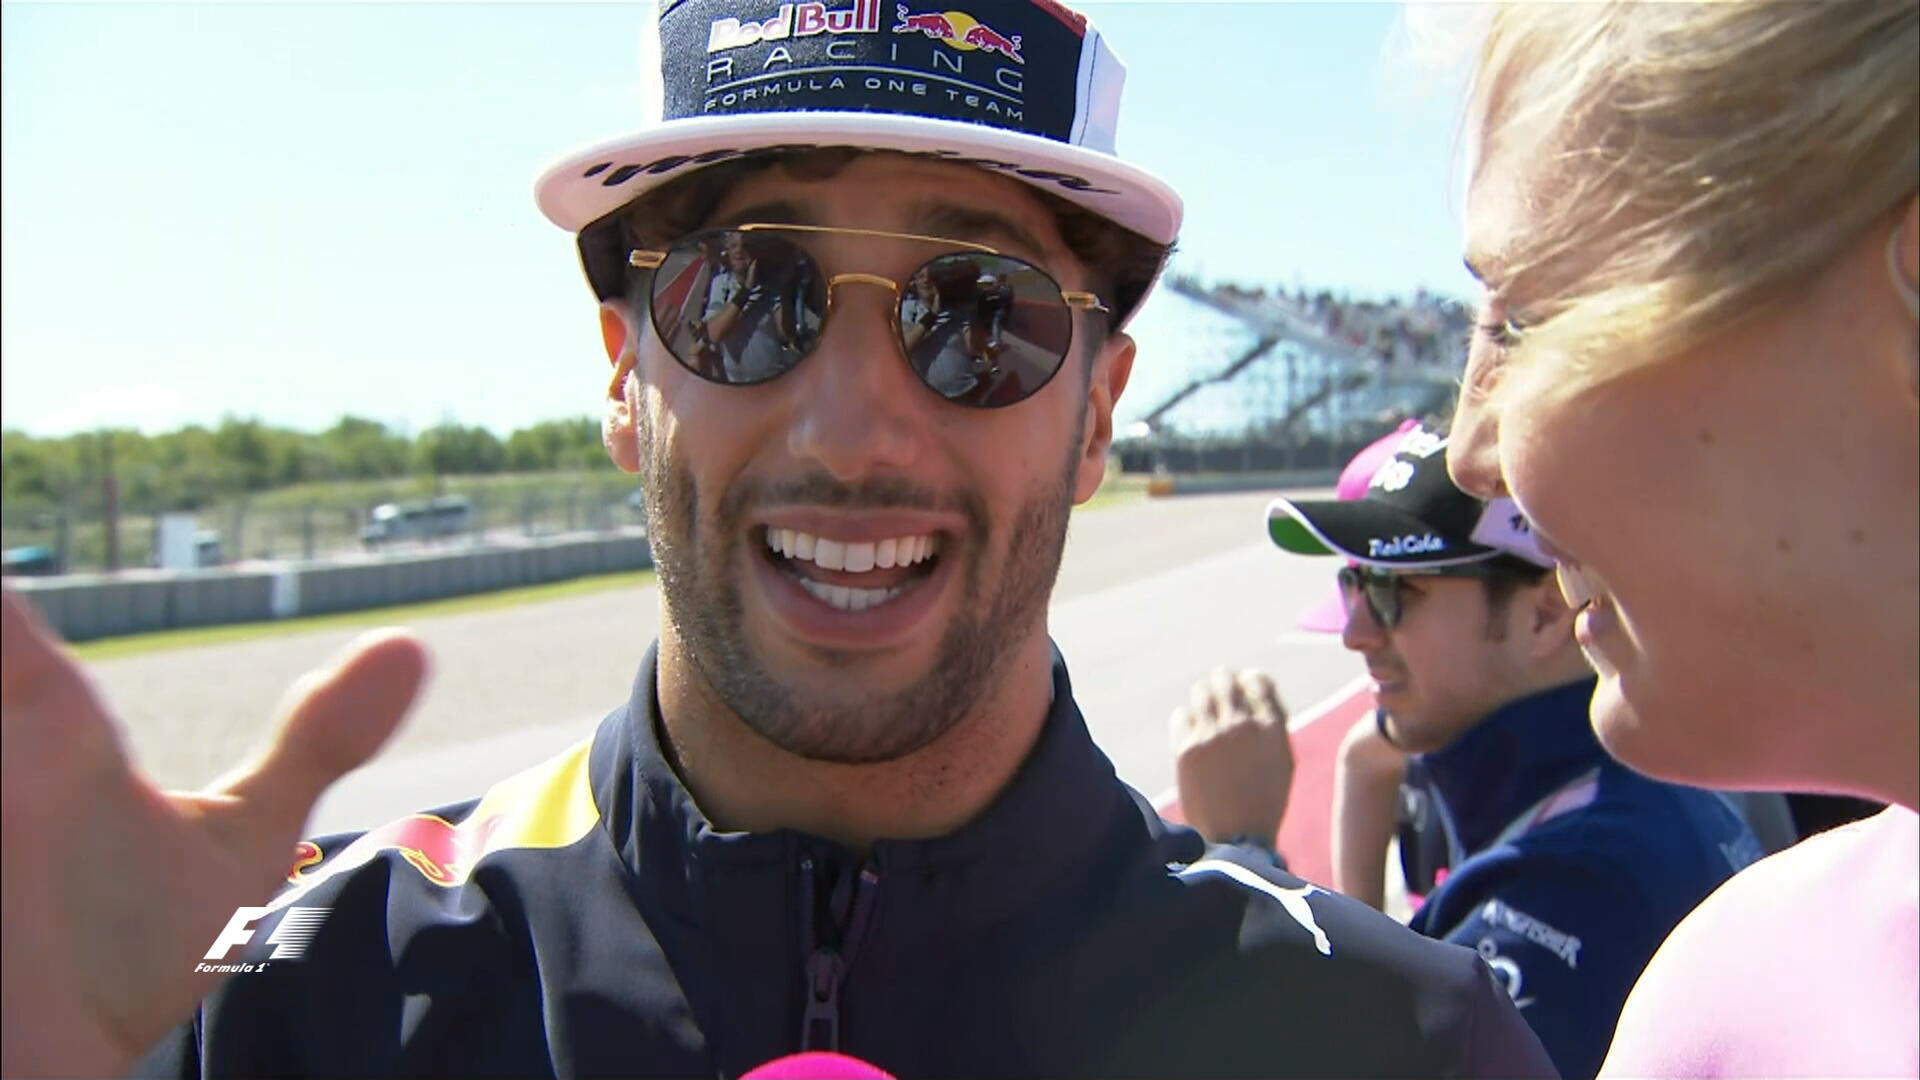 Formula 1 on X: "Who's pulling off sunglasses/hat combo better? 😎 for Ricciardo ❤️ for Vettel #USGP #F1 https://t.co/ZxRHJYCxRH" / X